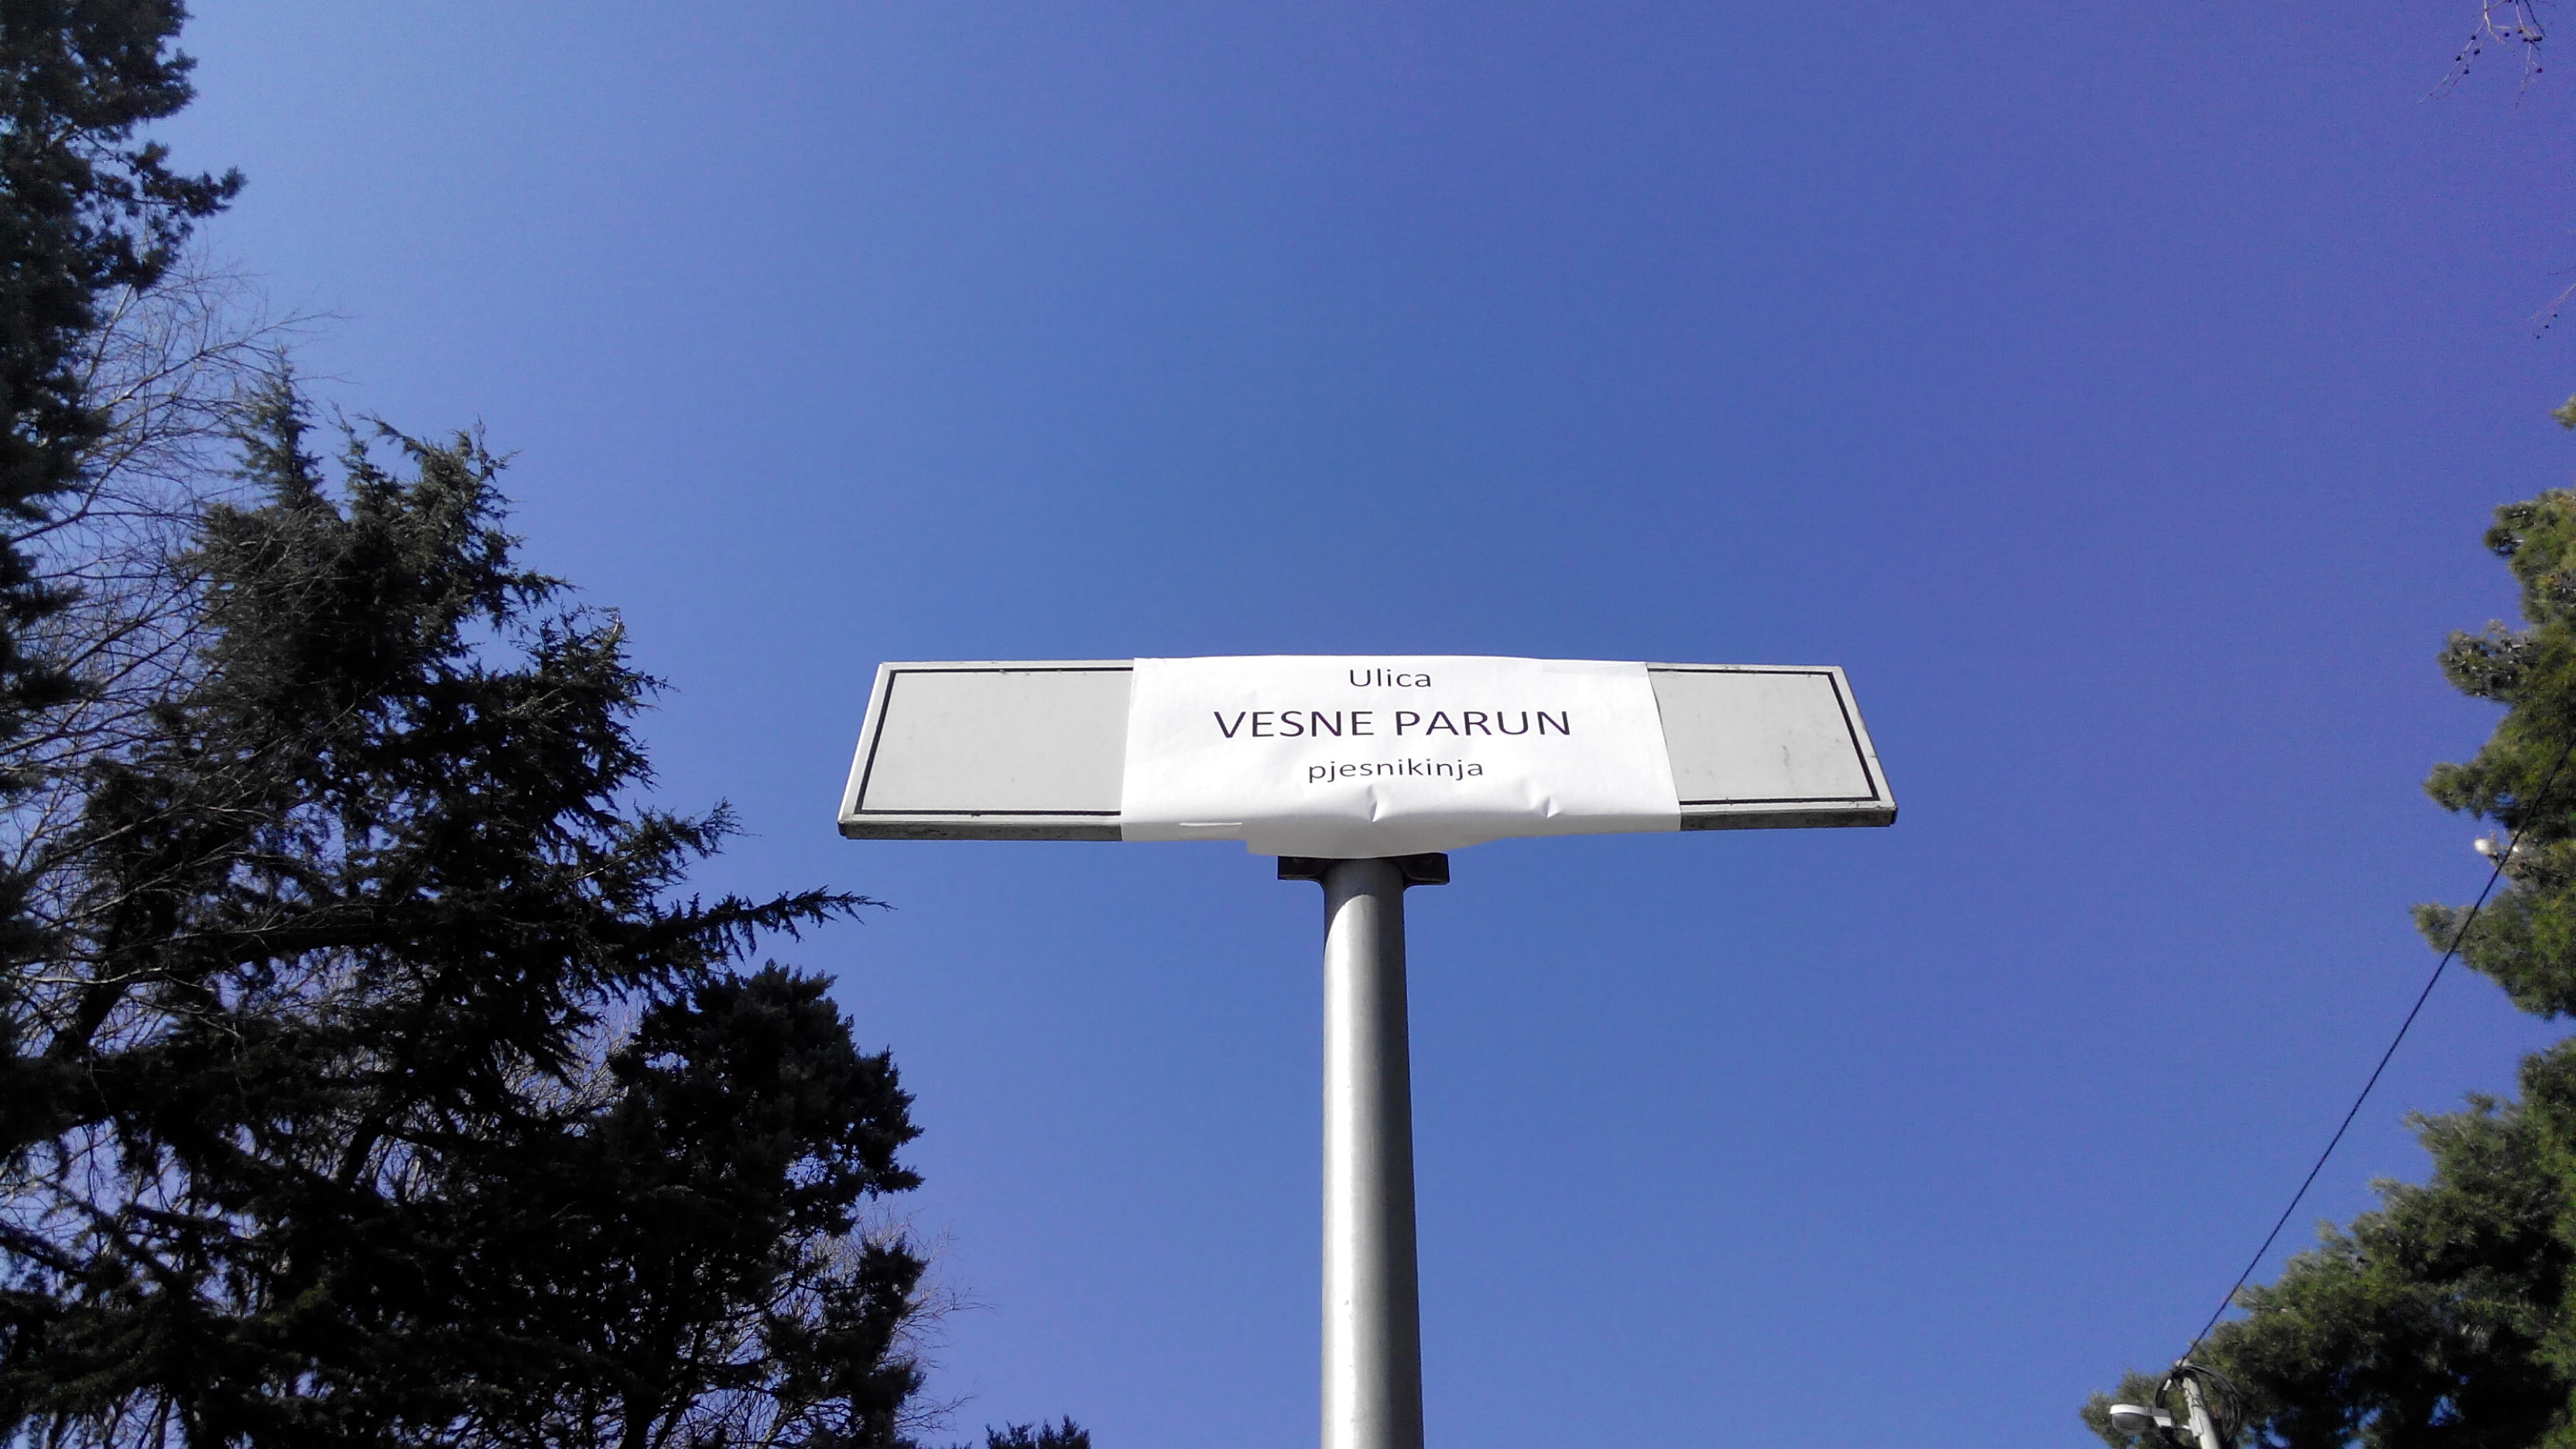 Photo: a street sign renamed after Vesna Parun, a Croatian poet Credits: Marinella Matejcic